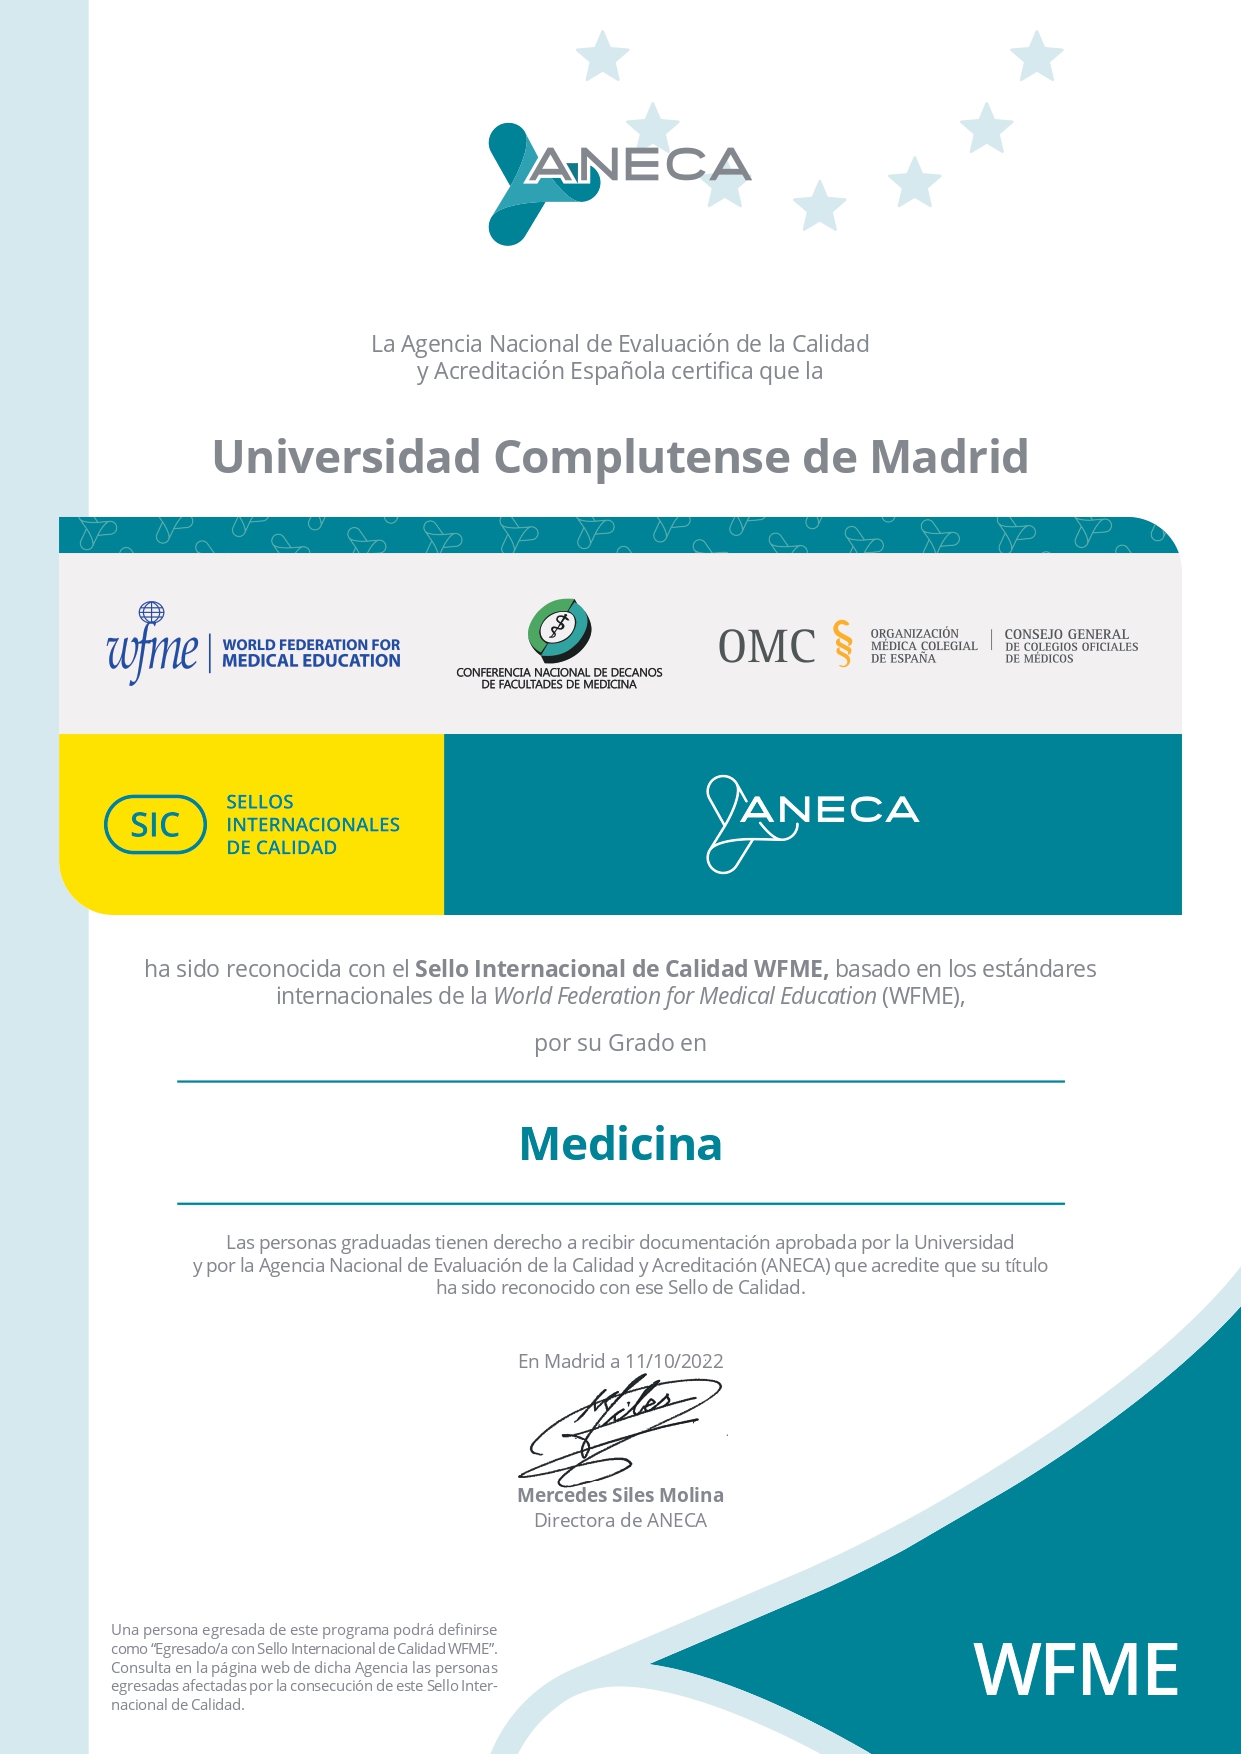 La Agencia Nacional de Evaluación de la Calidad y Acreditación Española certifica que la  Universidad Complutense de Madrid ha sido reconocida con el Sello Internacional de Calidad WFME, basado en los estándares  internacionales de la World Federation